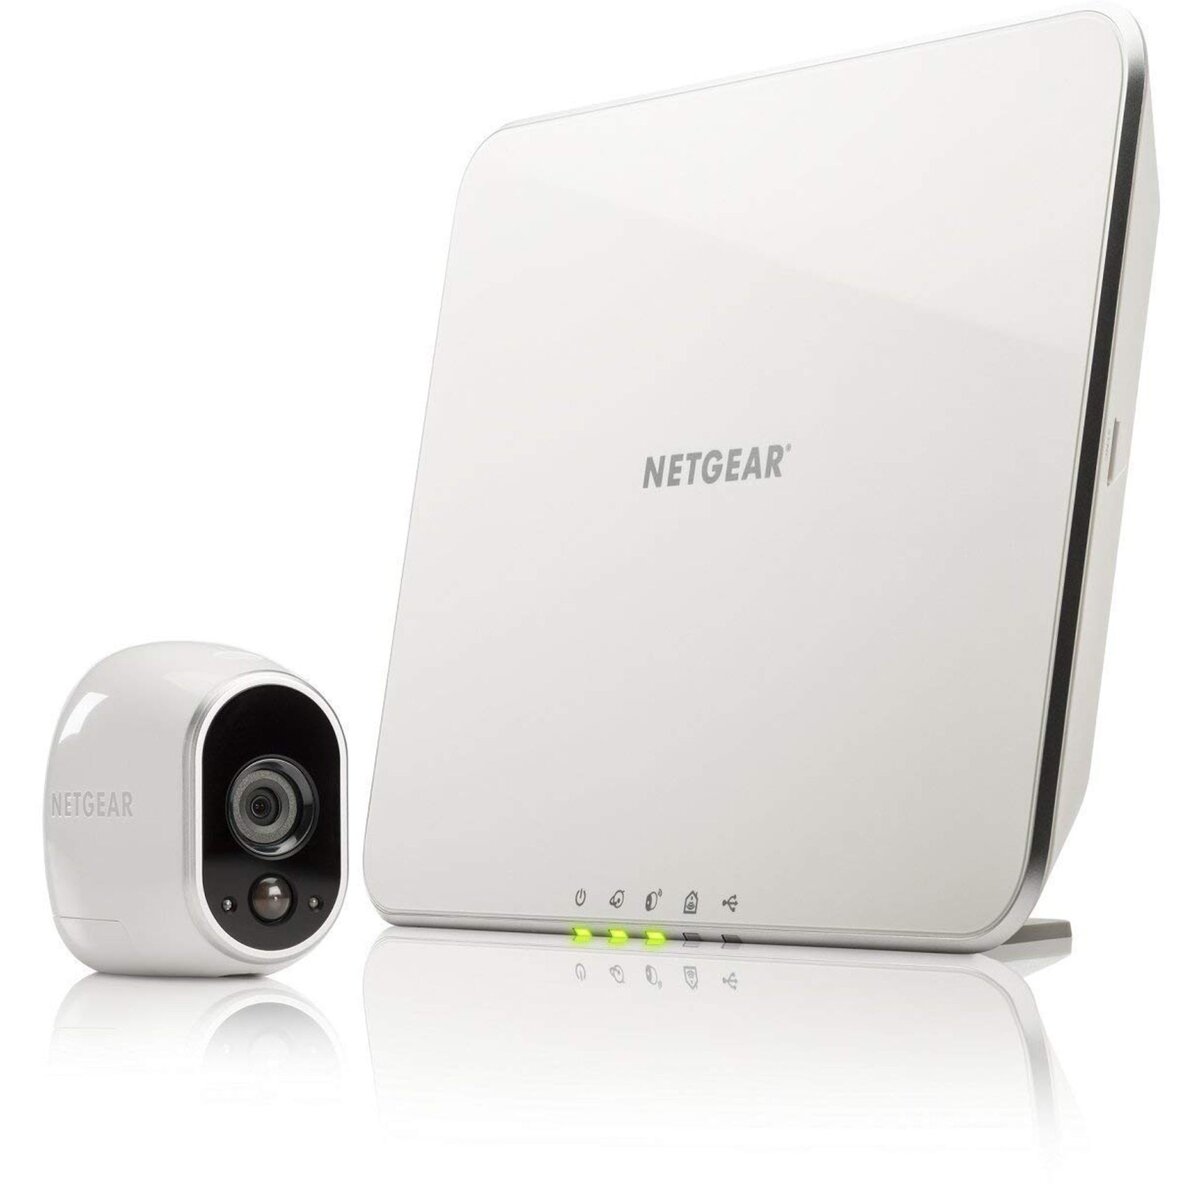 ARLO Kit vidéo surveillance - Wifi - Sans fil - Intérieur/extérieur - Infra-rouge - WMC 3030